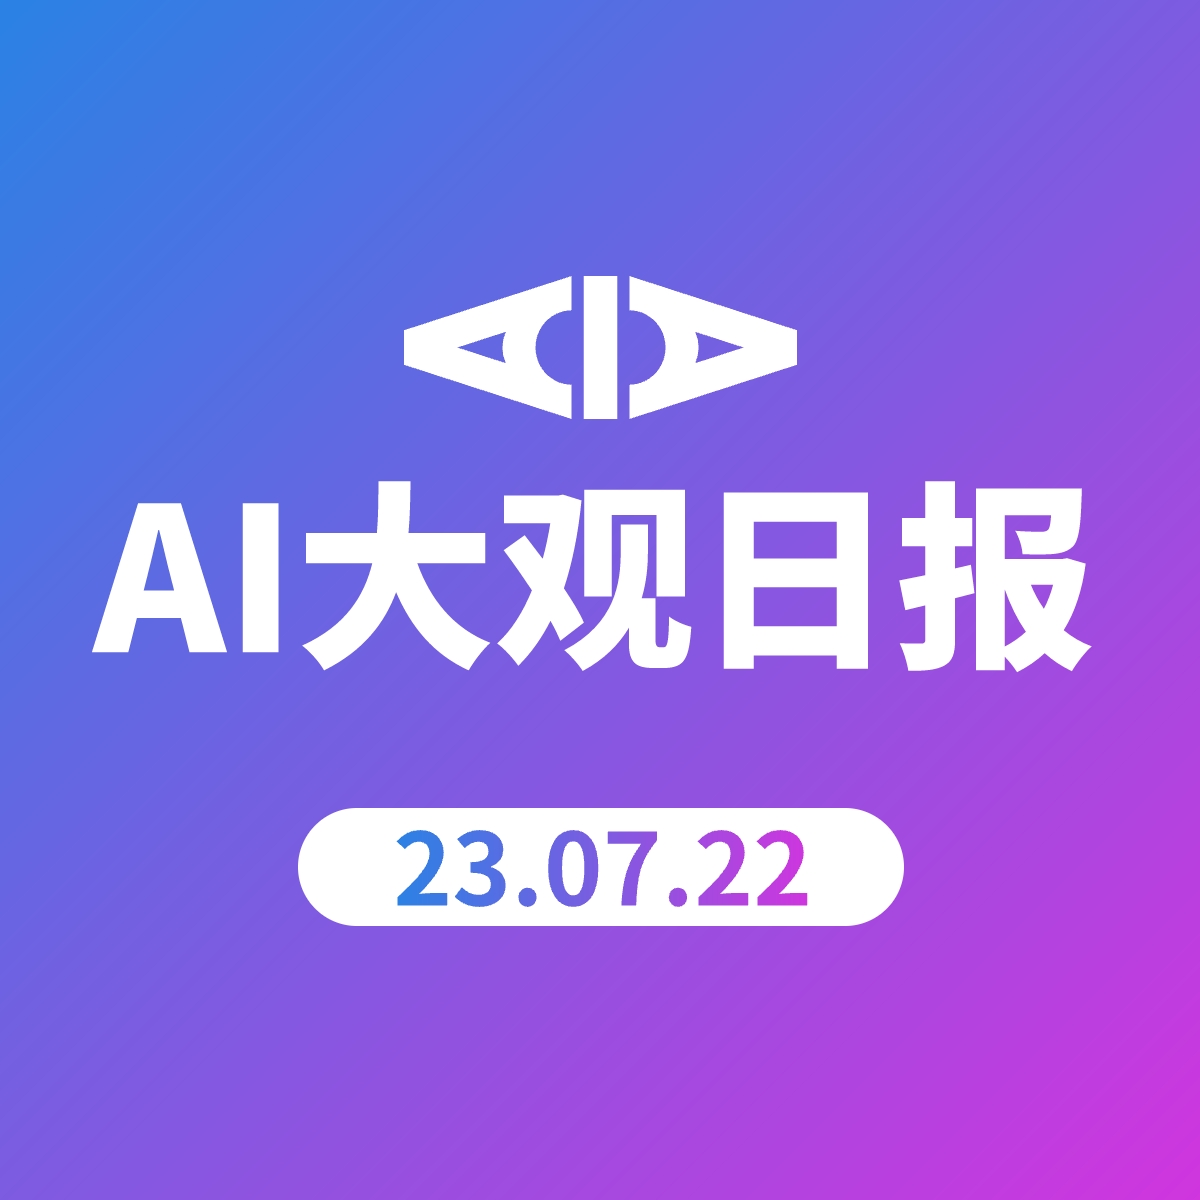 AI大观日报 | 23.07.22